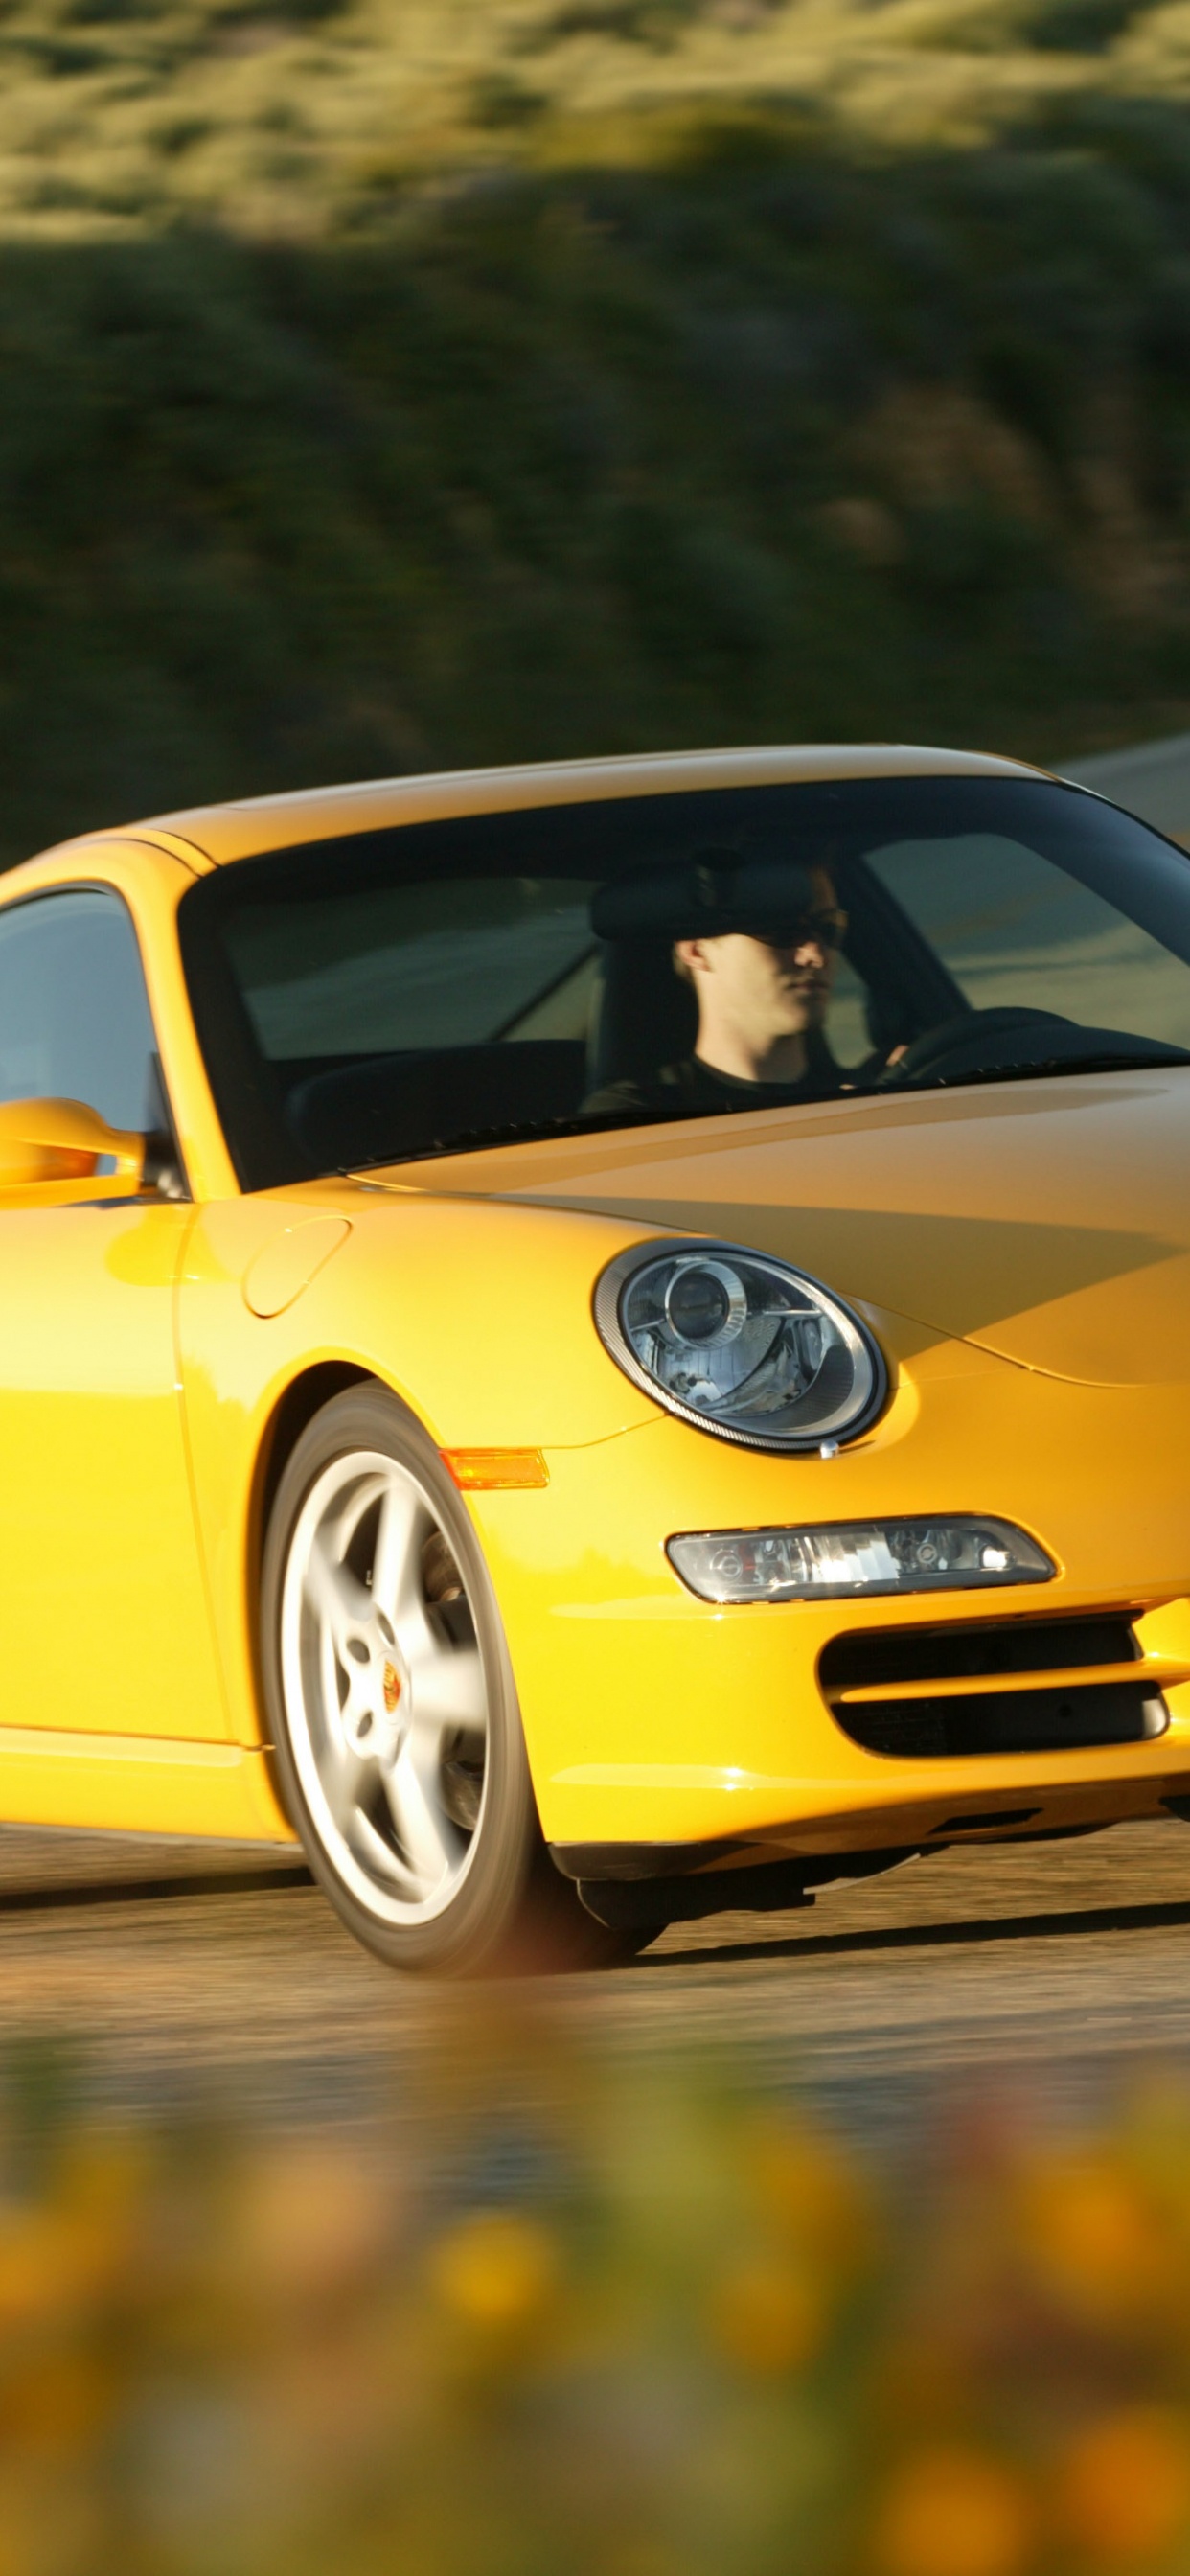 Porsche 911 Amarillo en la Carretera Durante el Día. Wallpaper in 1242x2688 Resolution